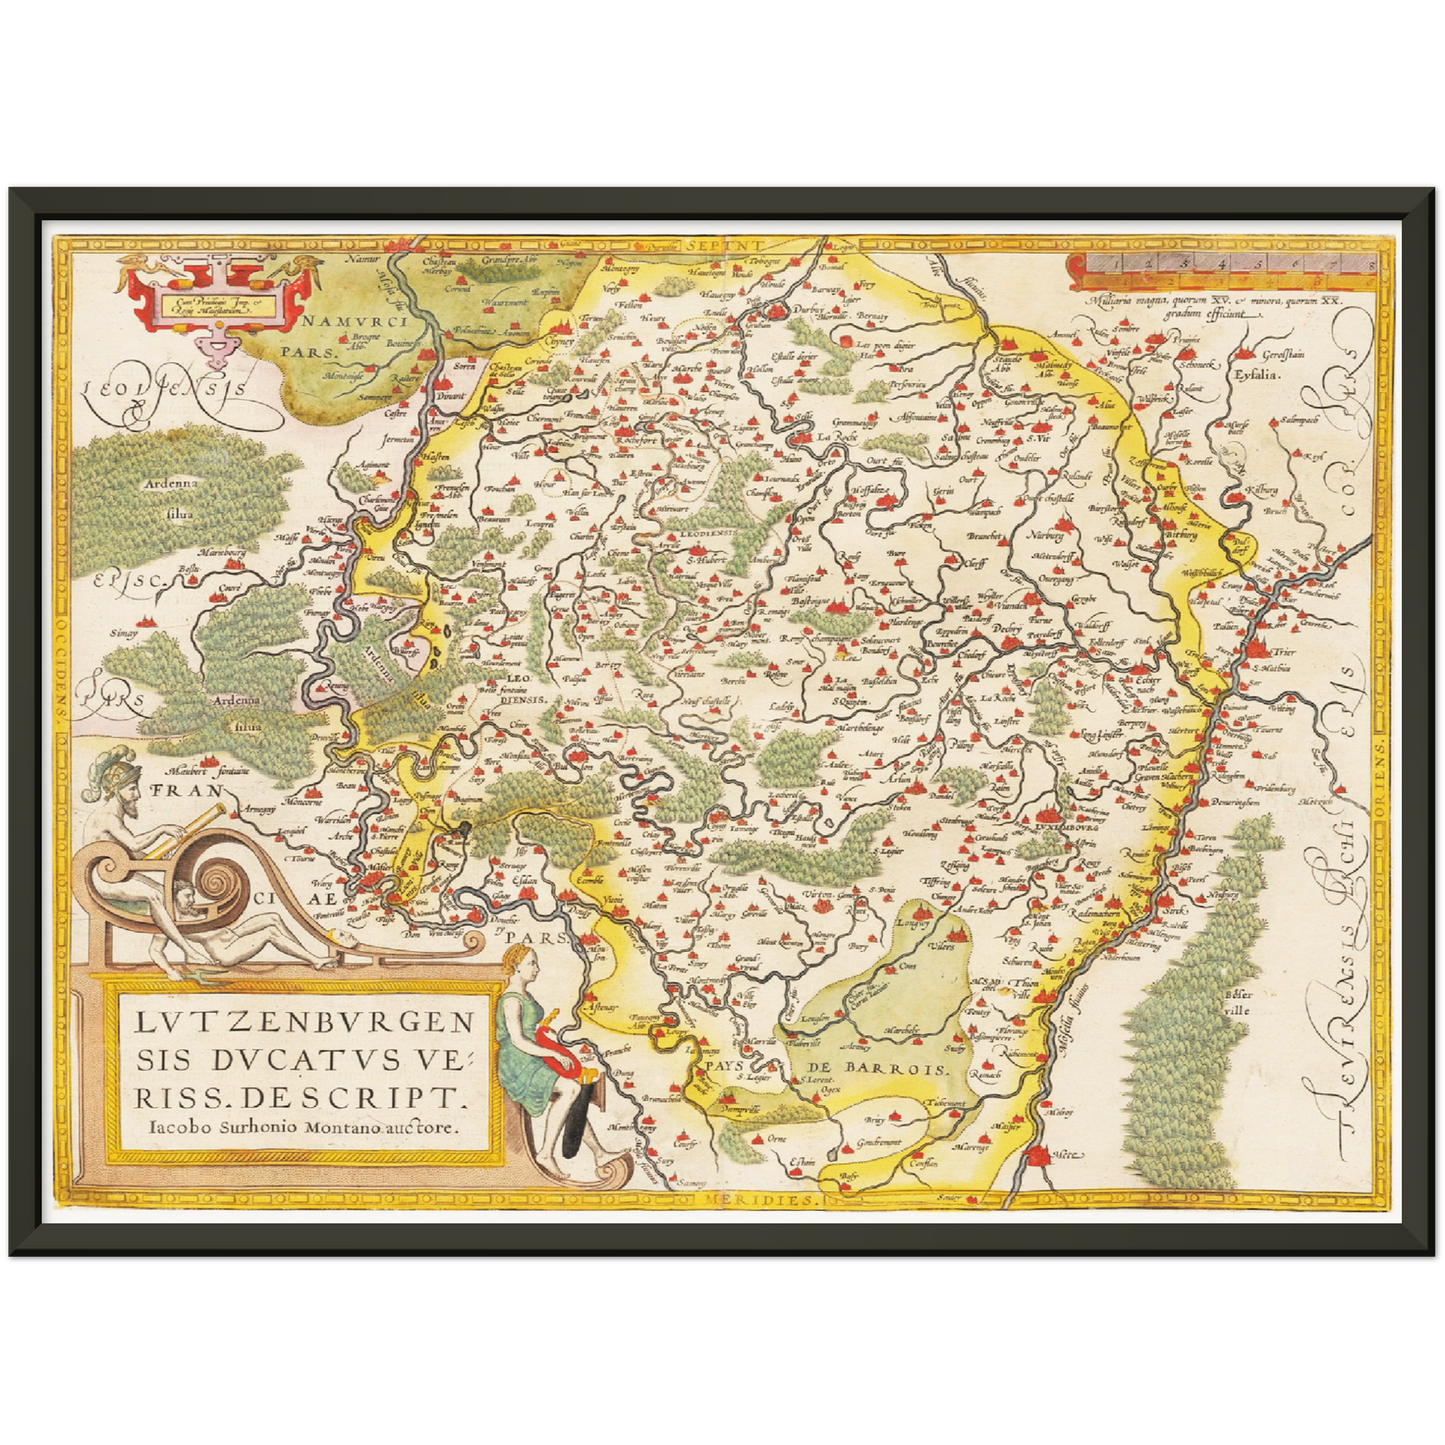 Historische Landkarte Luxemburg um 1609